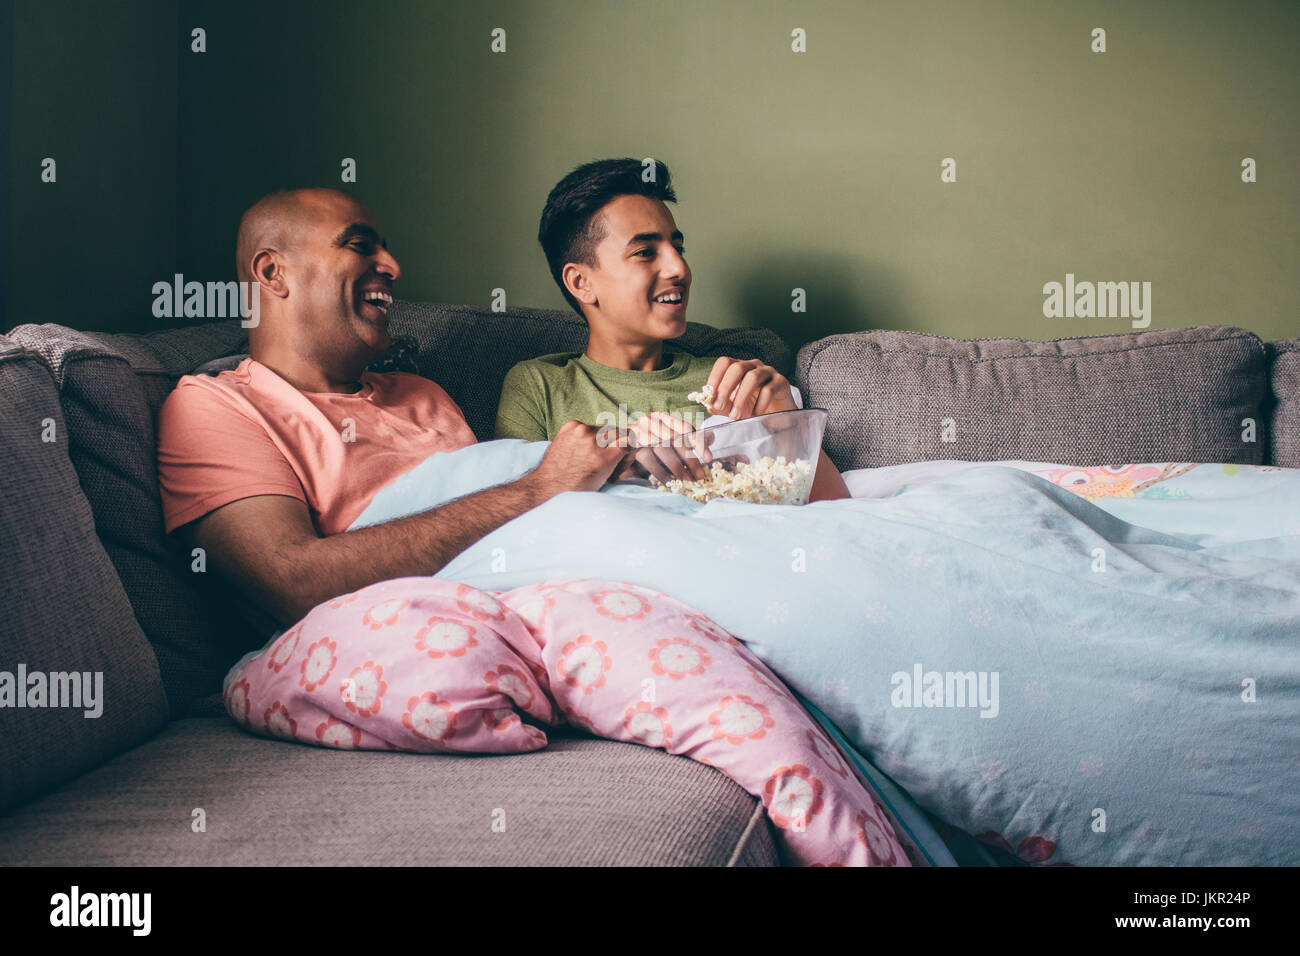 Vater und Sohn gemeinsam einen Film anschauen. Sie sind zusammengerollt auf dem Sofa mit Popcorn und lachst. Stockfoto